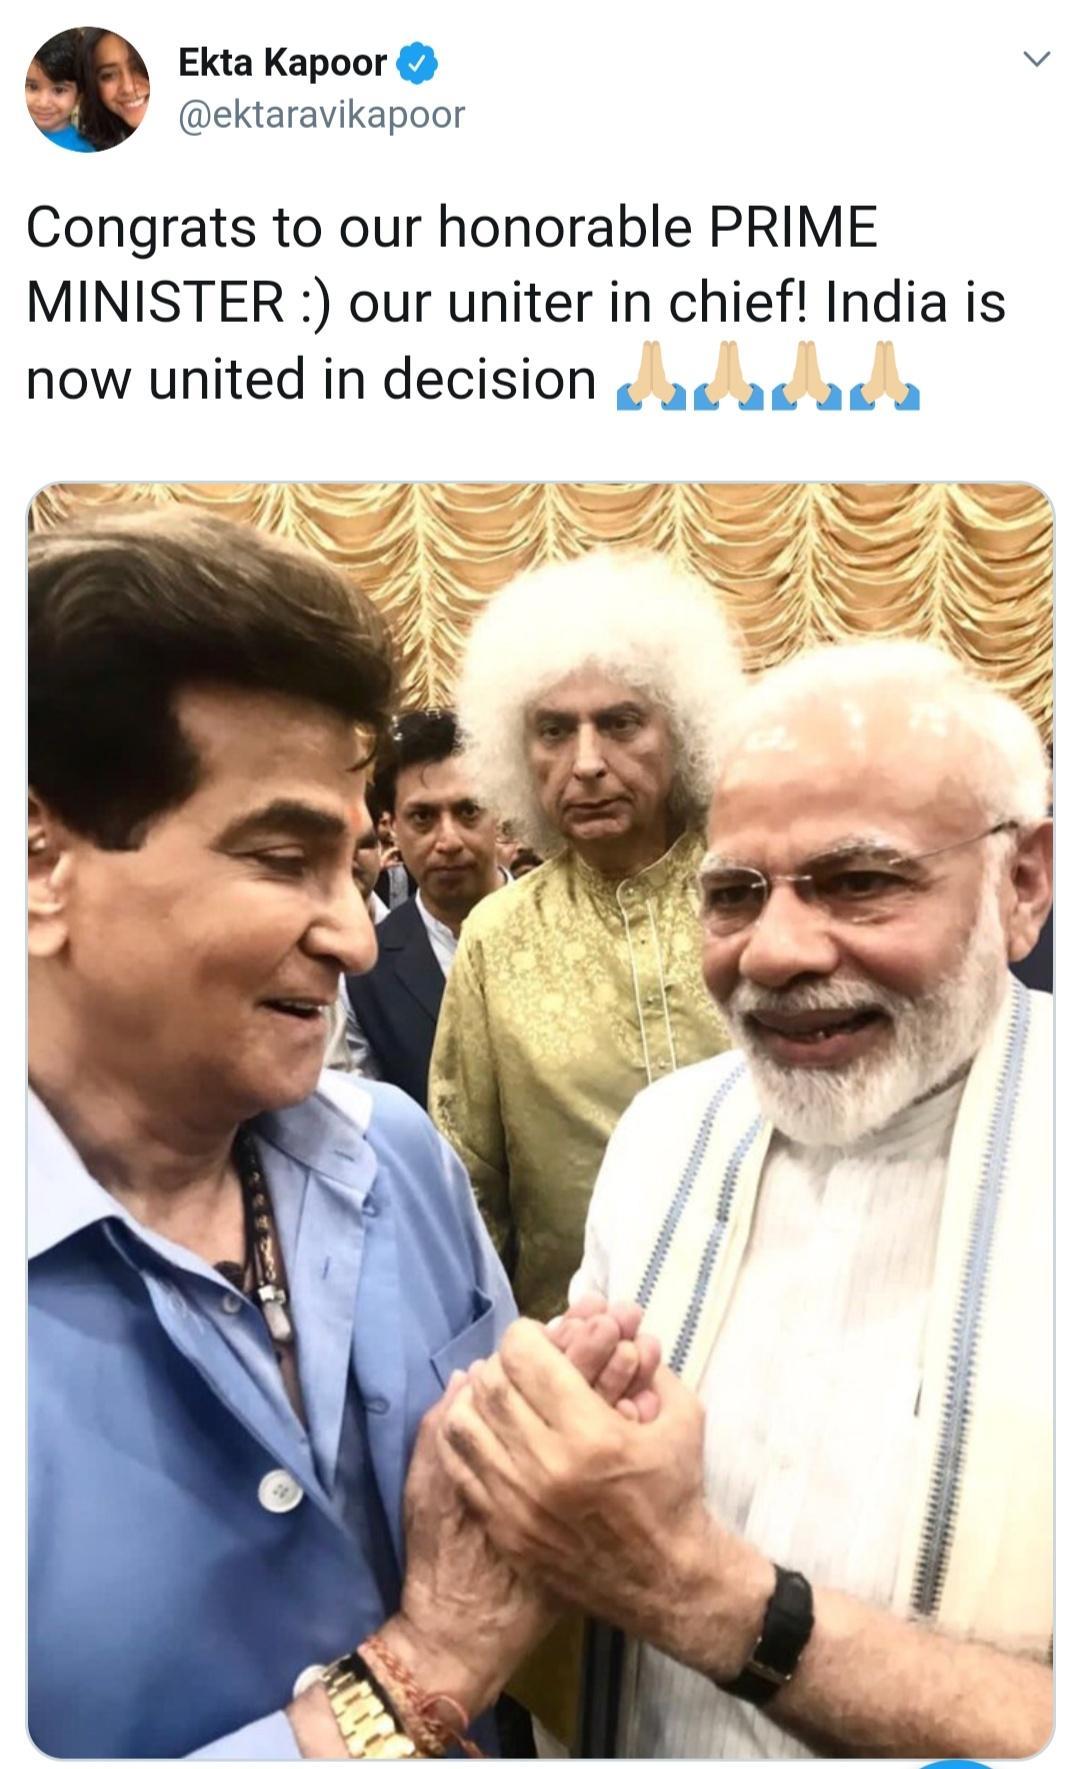 Bollywood Congratulates PM Modi On His Victory!